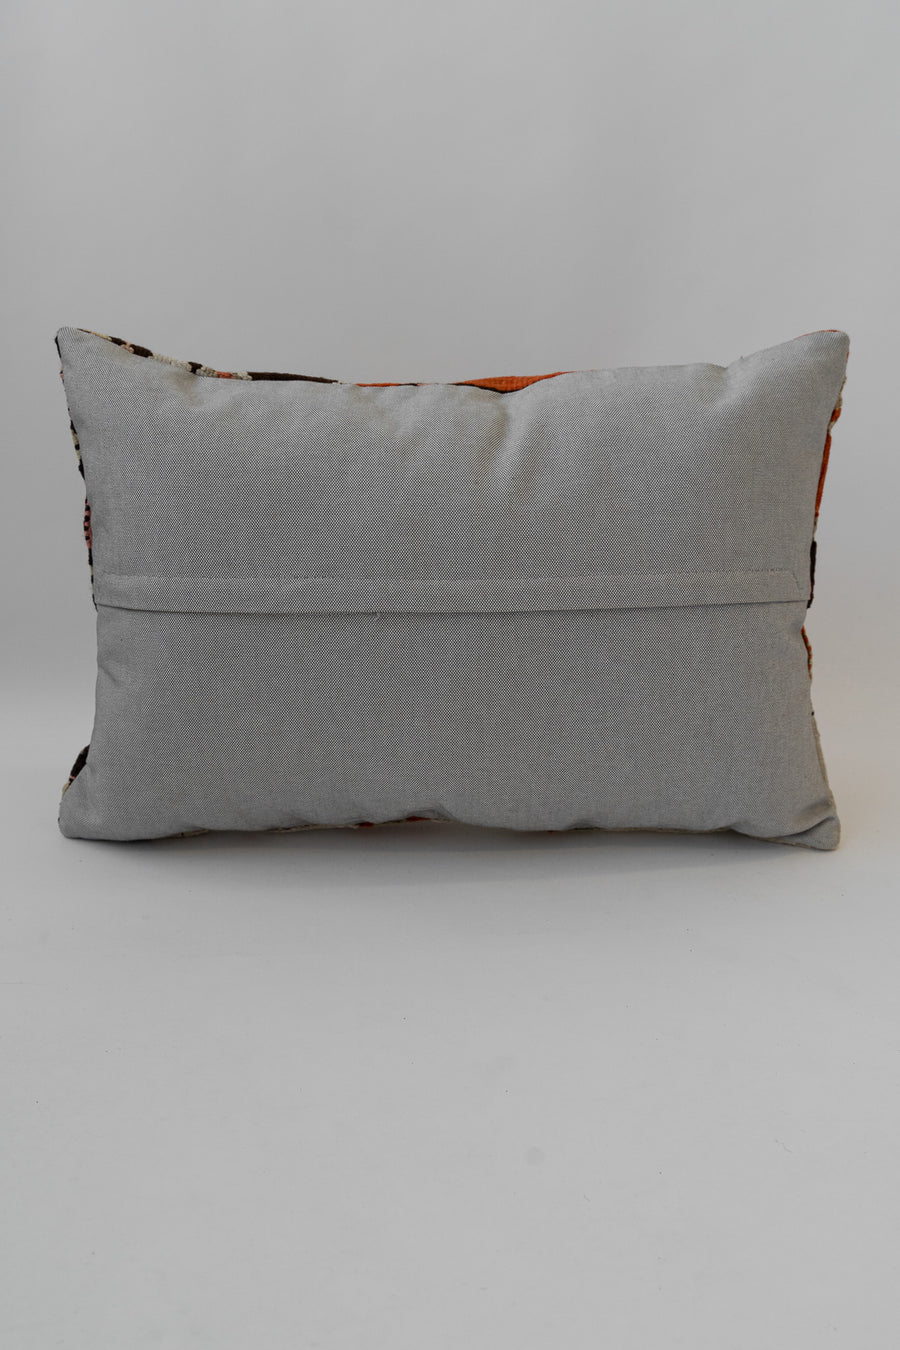 Rust Motif Lumbar Pillow